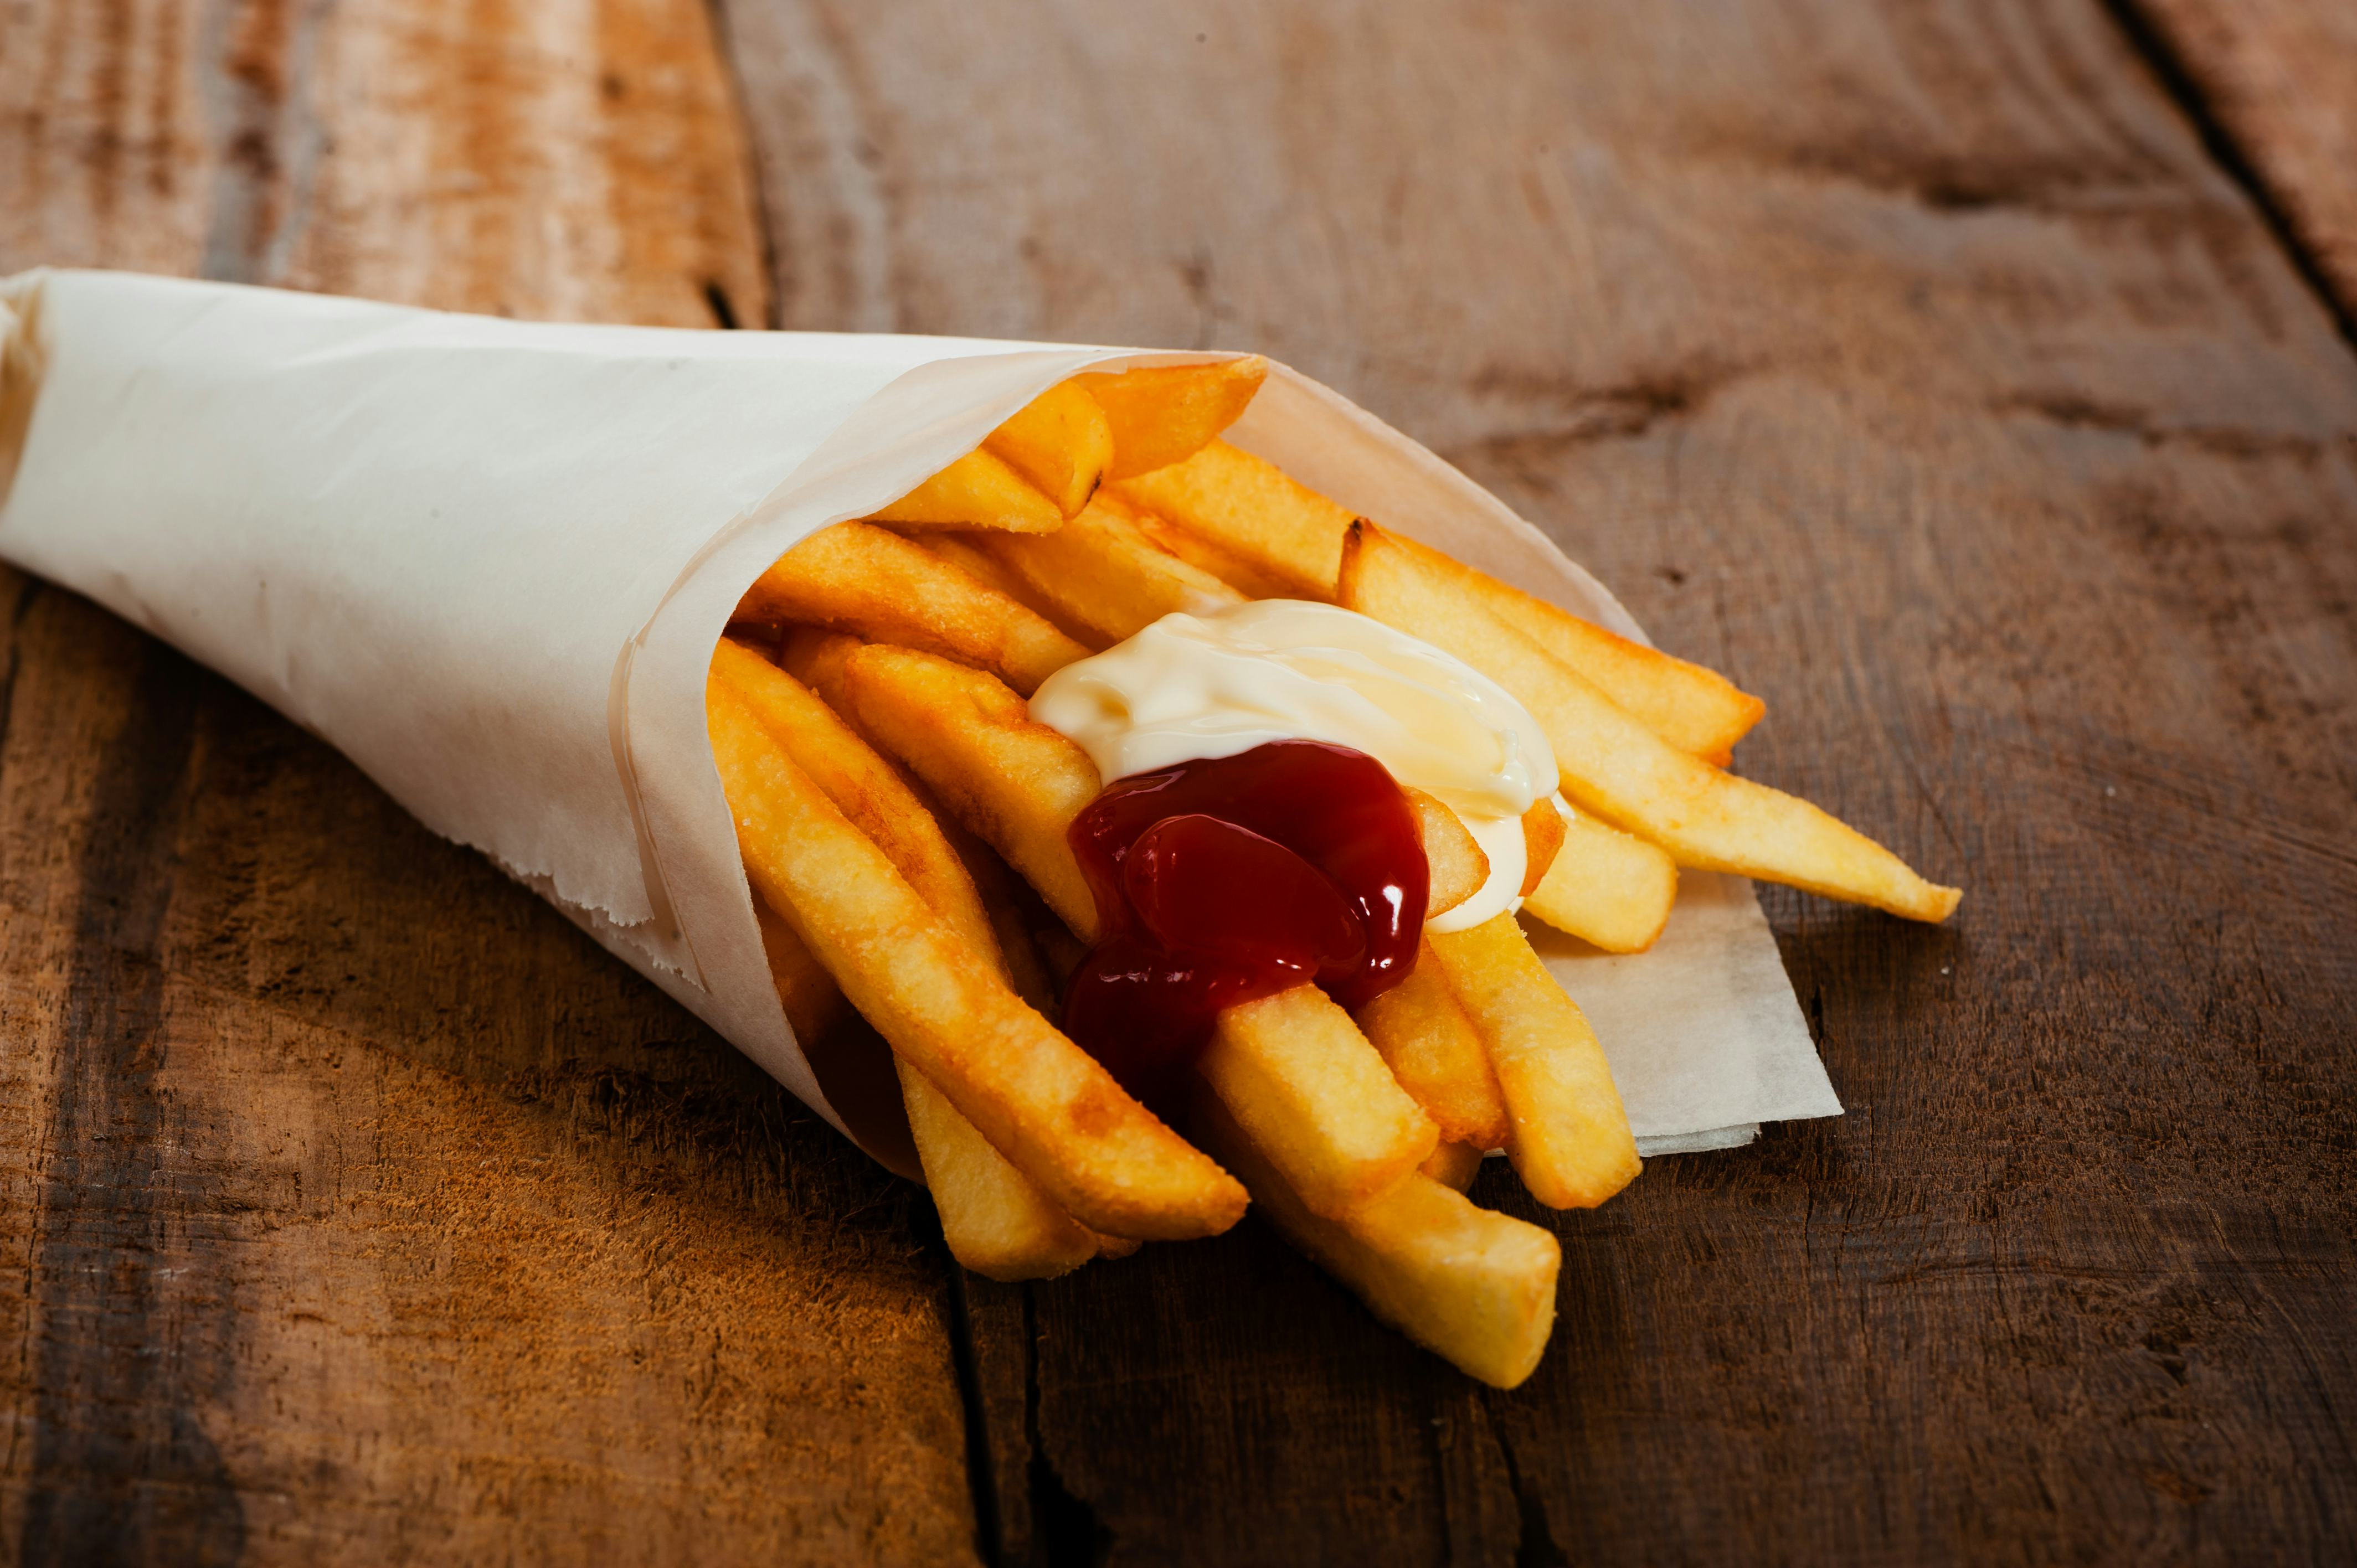 Nederland en België grootste frietfabrikanten